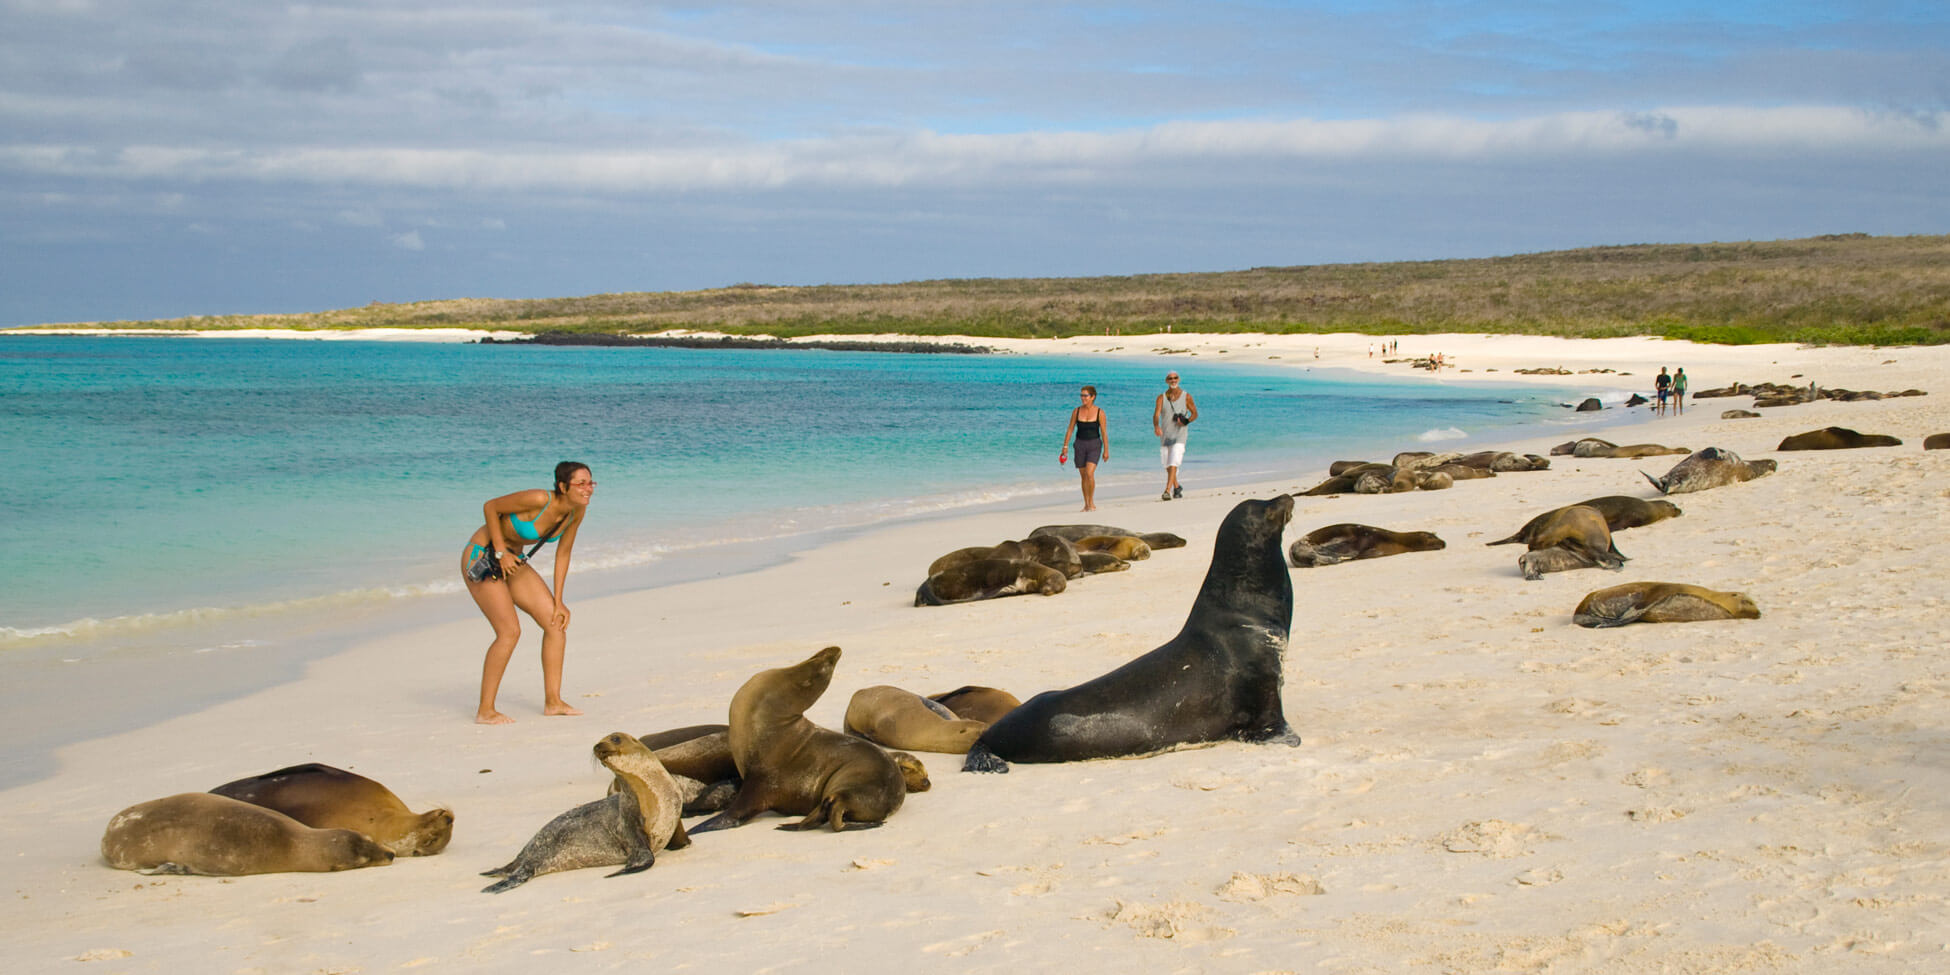 Este sitio turístico se encuentra en la bahía Tortuga, al suroeste de Puerto Ayora, en la isla Santa Cruz, del archipiélago de las Galápagos.